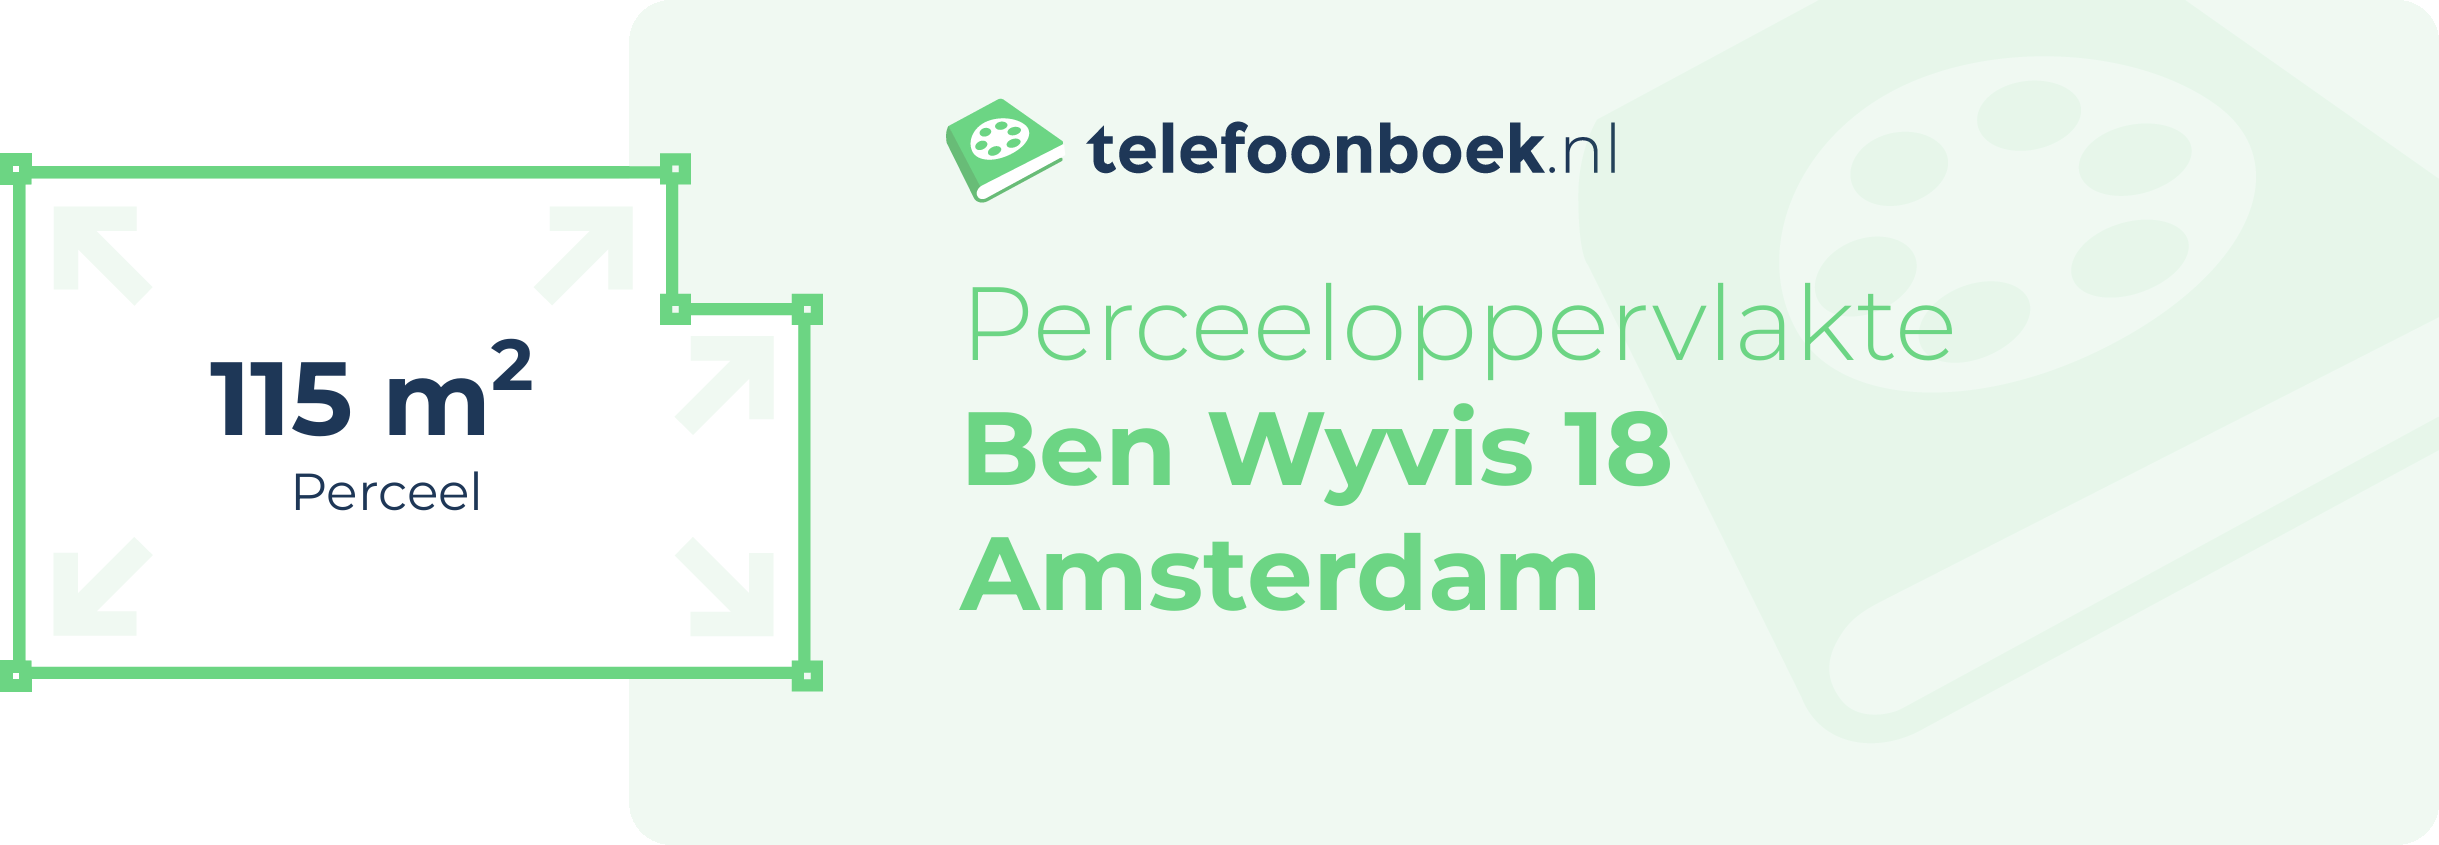 Perceeloppervlakte Ben Wyvis 18 Amsterdam